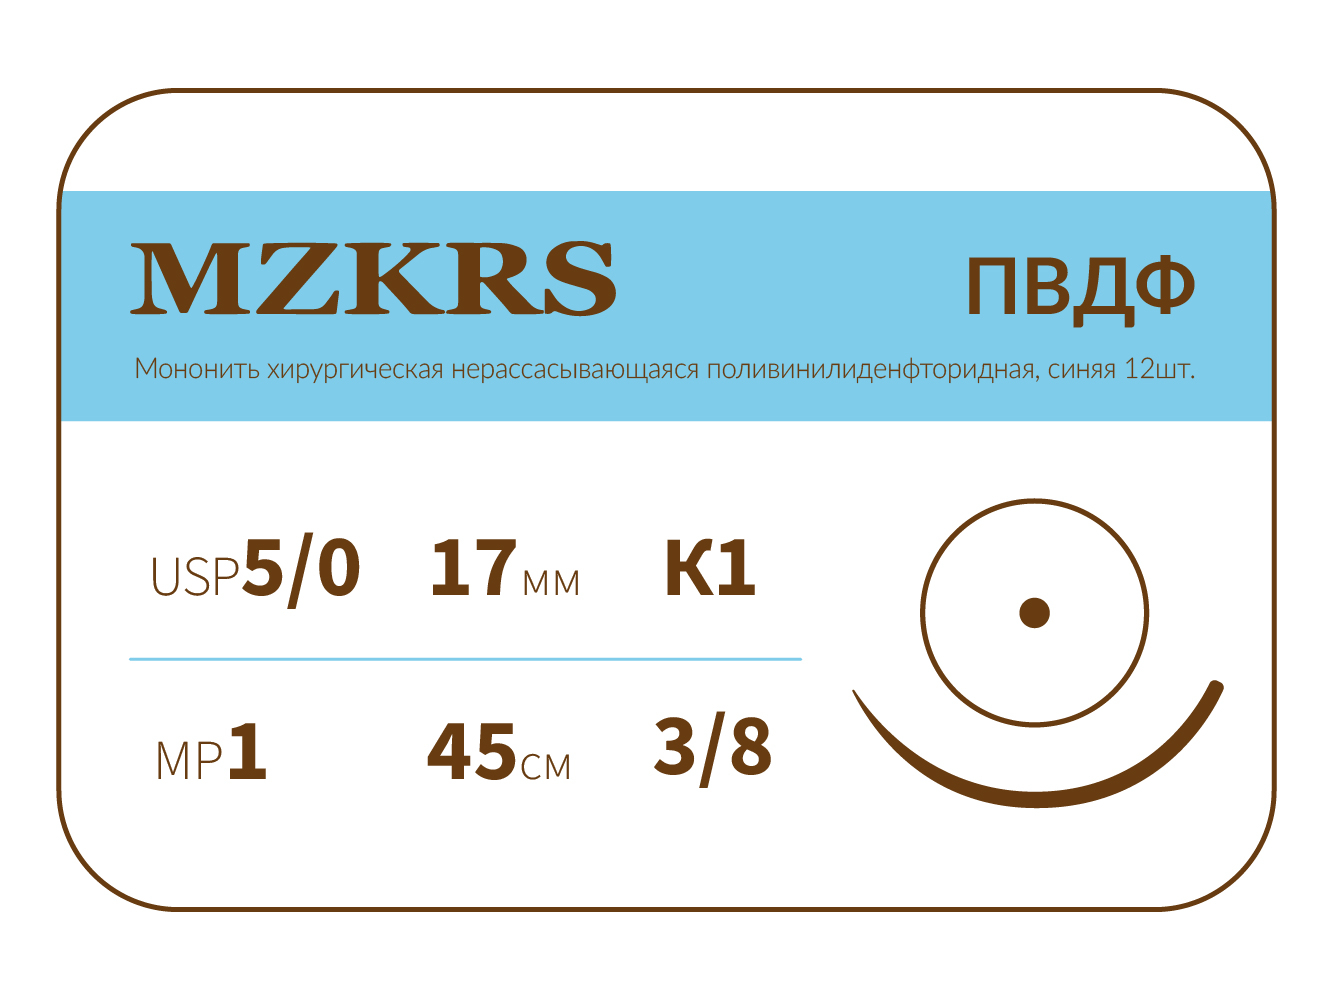 1738К1-Premium-5/0 (1)45- ПВДФ хирургическая нить поливинилиденфторидная, MZKRS (Россия)